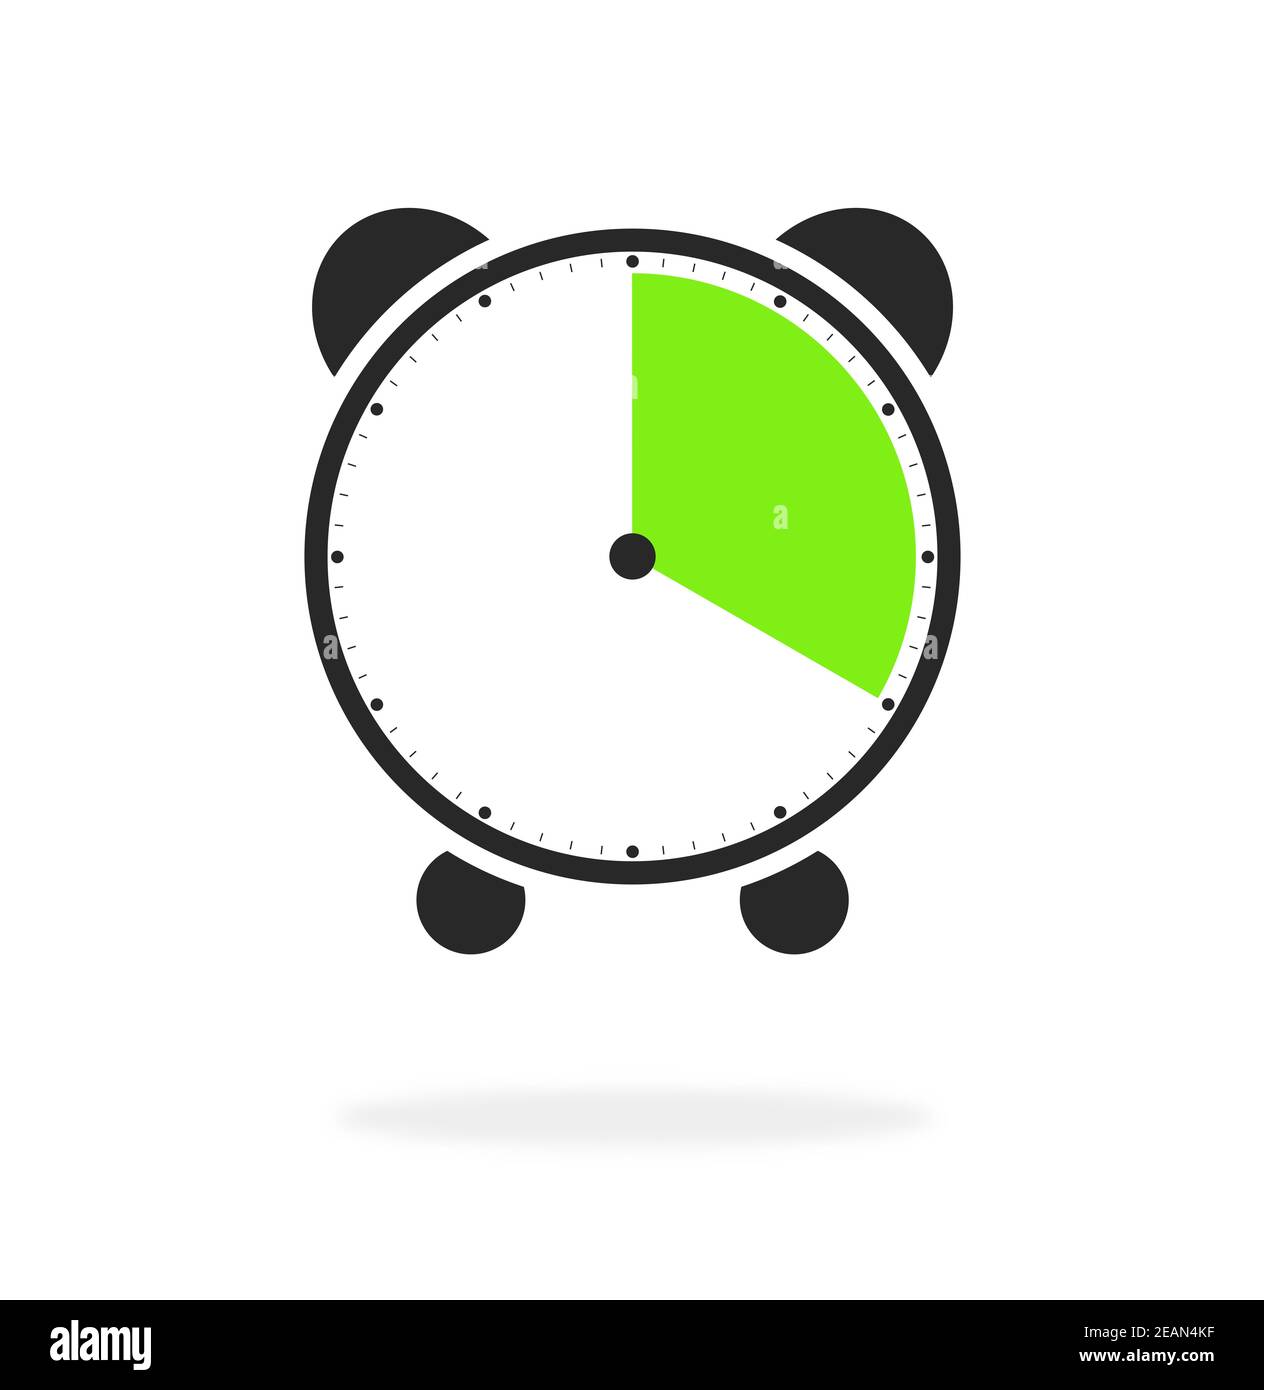 20 secondes, 20 minutes ou 4 heures - icône de réveil verte et noire Photo  Stock - Alamy